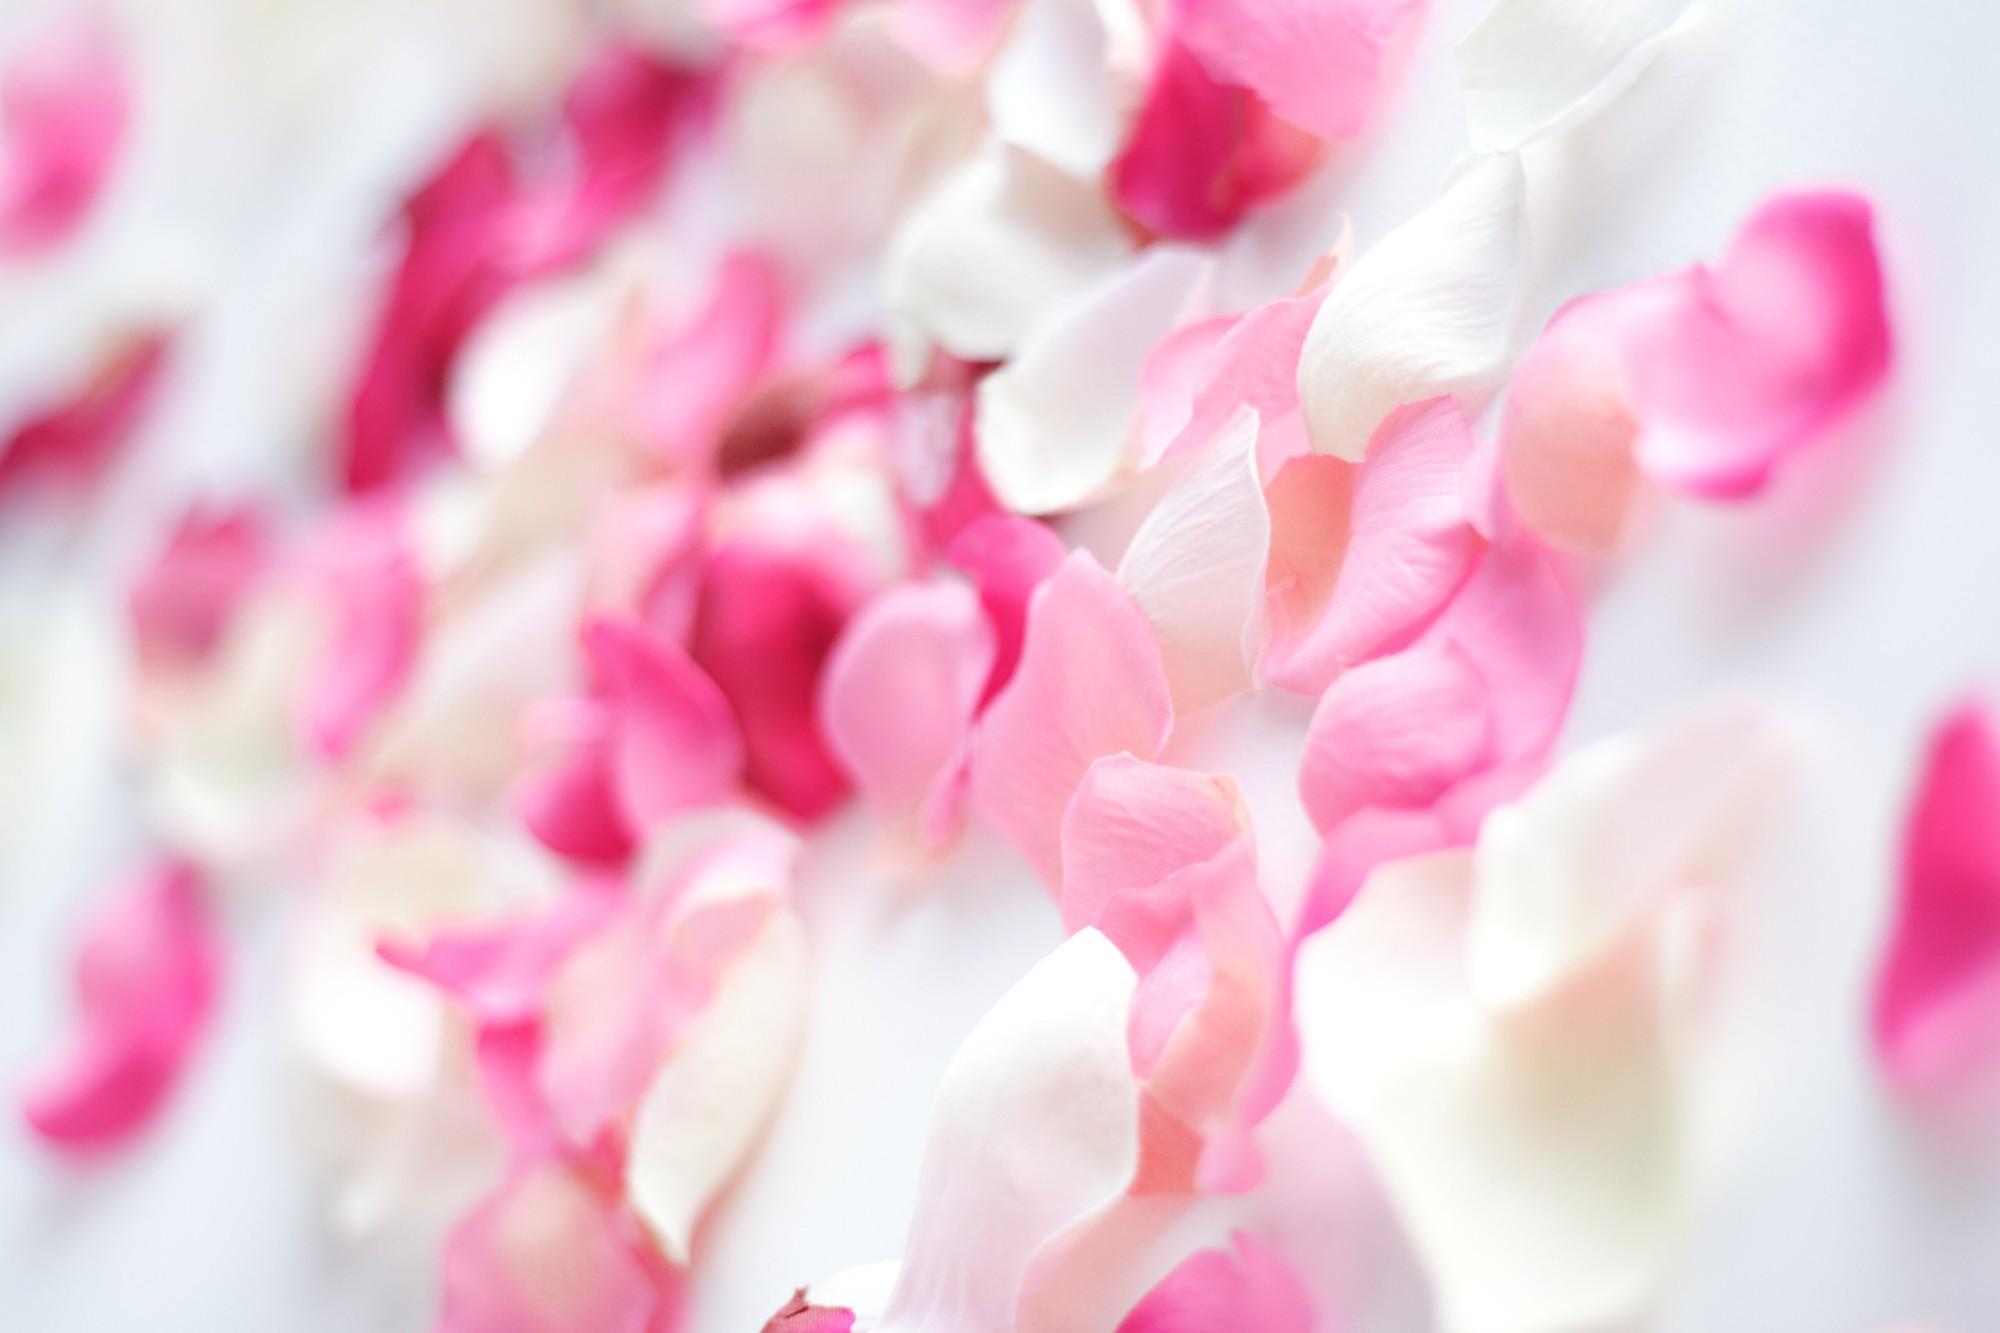 Pink flower petals wallpaper. PC